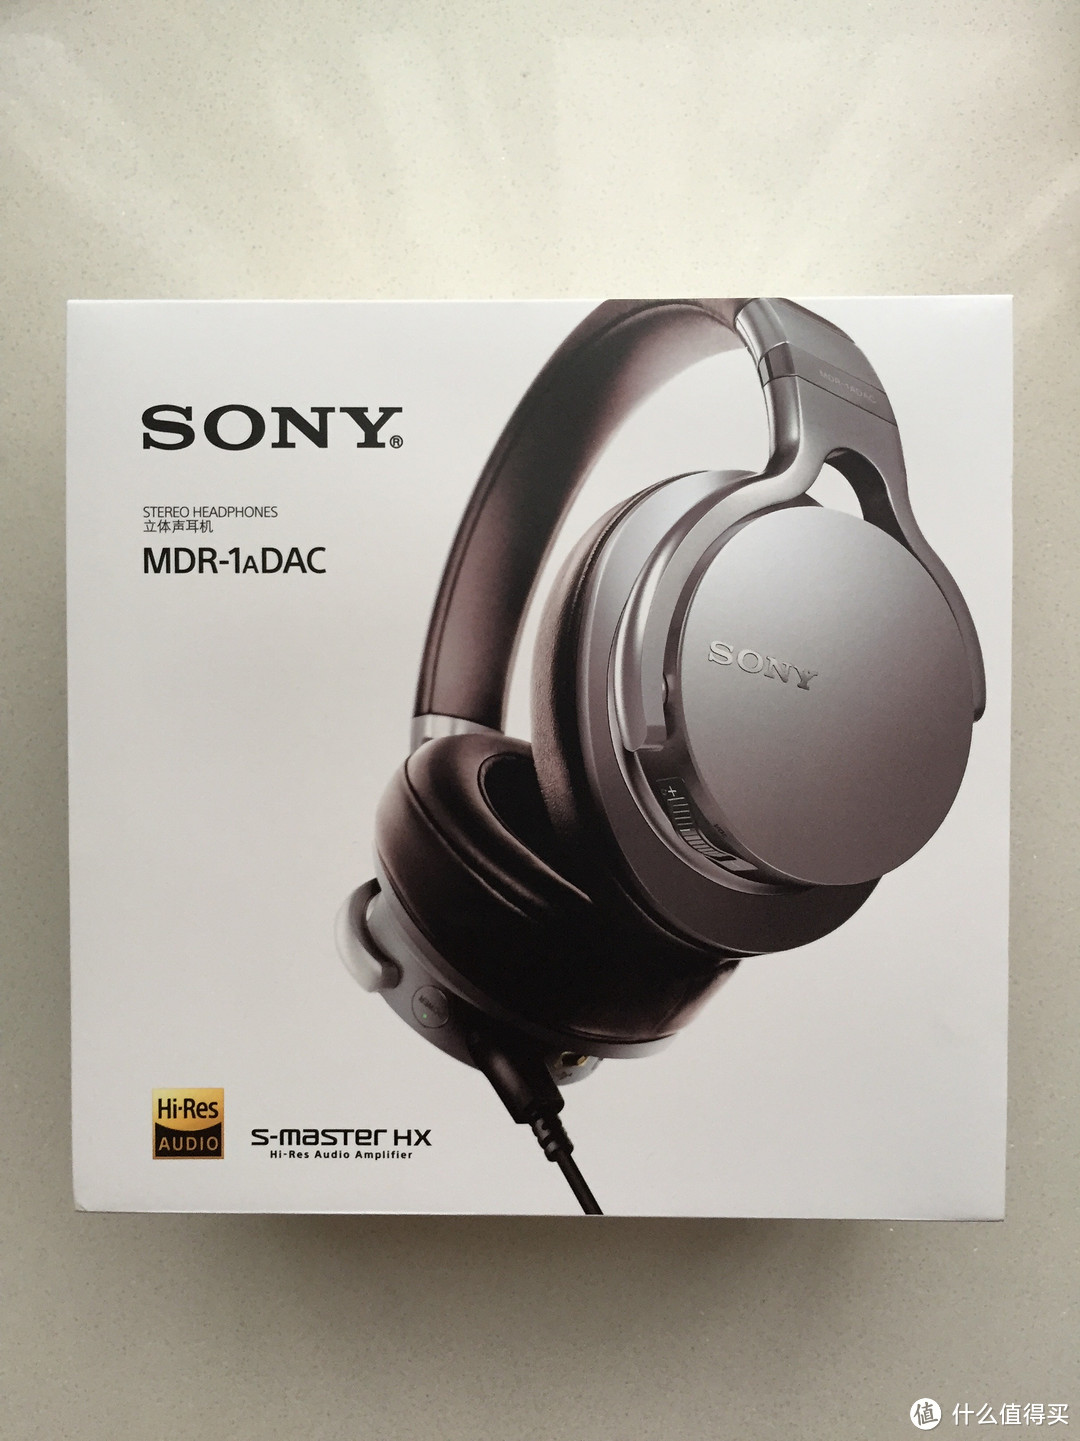 我的大法我的爱：Sony 索尼 MDR-1aDAC 头戴式耳机